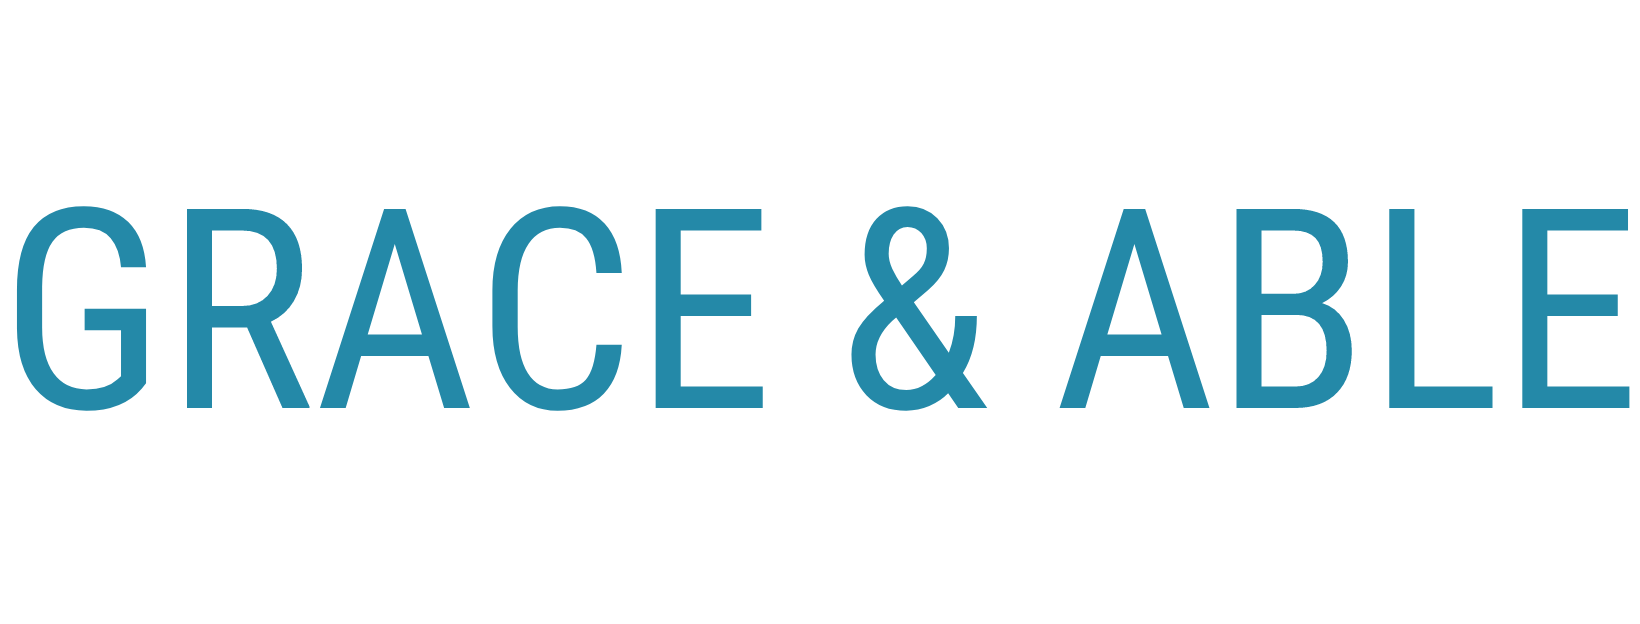 Grace & Able logo